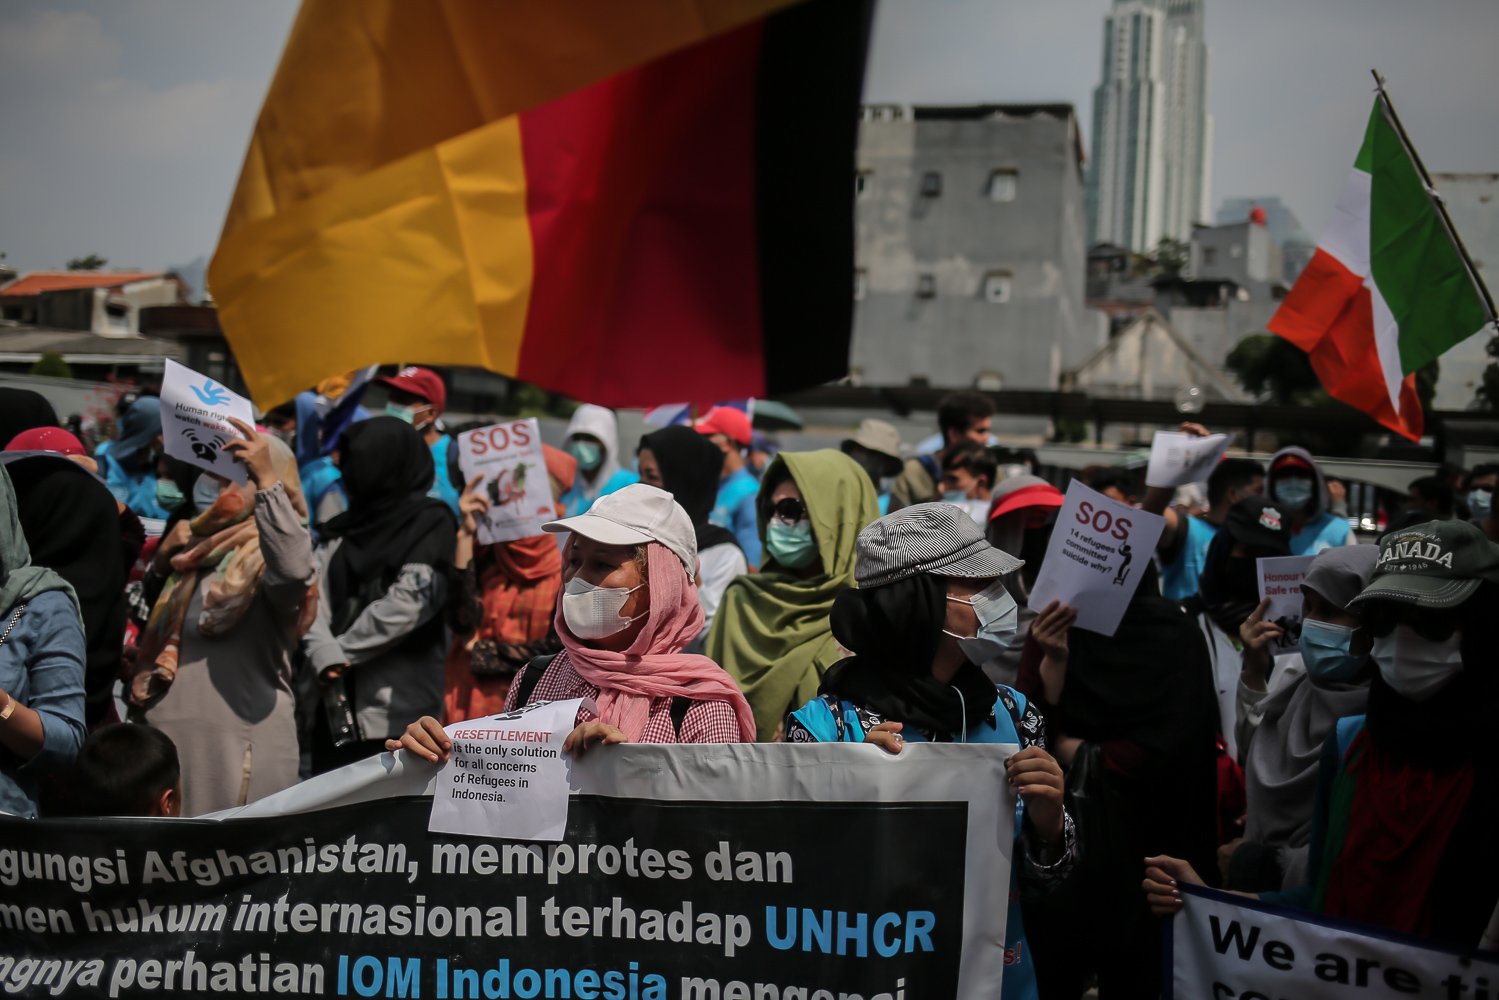 Puluhan imigran atau pencari suaka asal Afghanistan menggelar aksi damai di depan kantor United Nations High Commissioner for Refugees (UNHCR) Indonesia, Jakarta, Senin (20/6/2022). Aksi damai tersebut dilakukan demi menuntut UNHCR memberi kejelasan dan memberangkatkan mereka ke negara ketiga yang terbebas dari konflik perang.